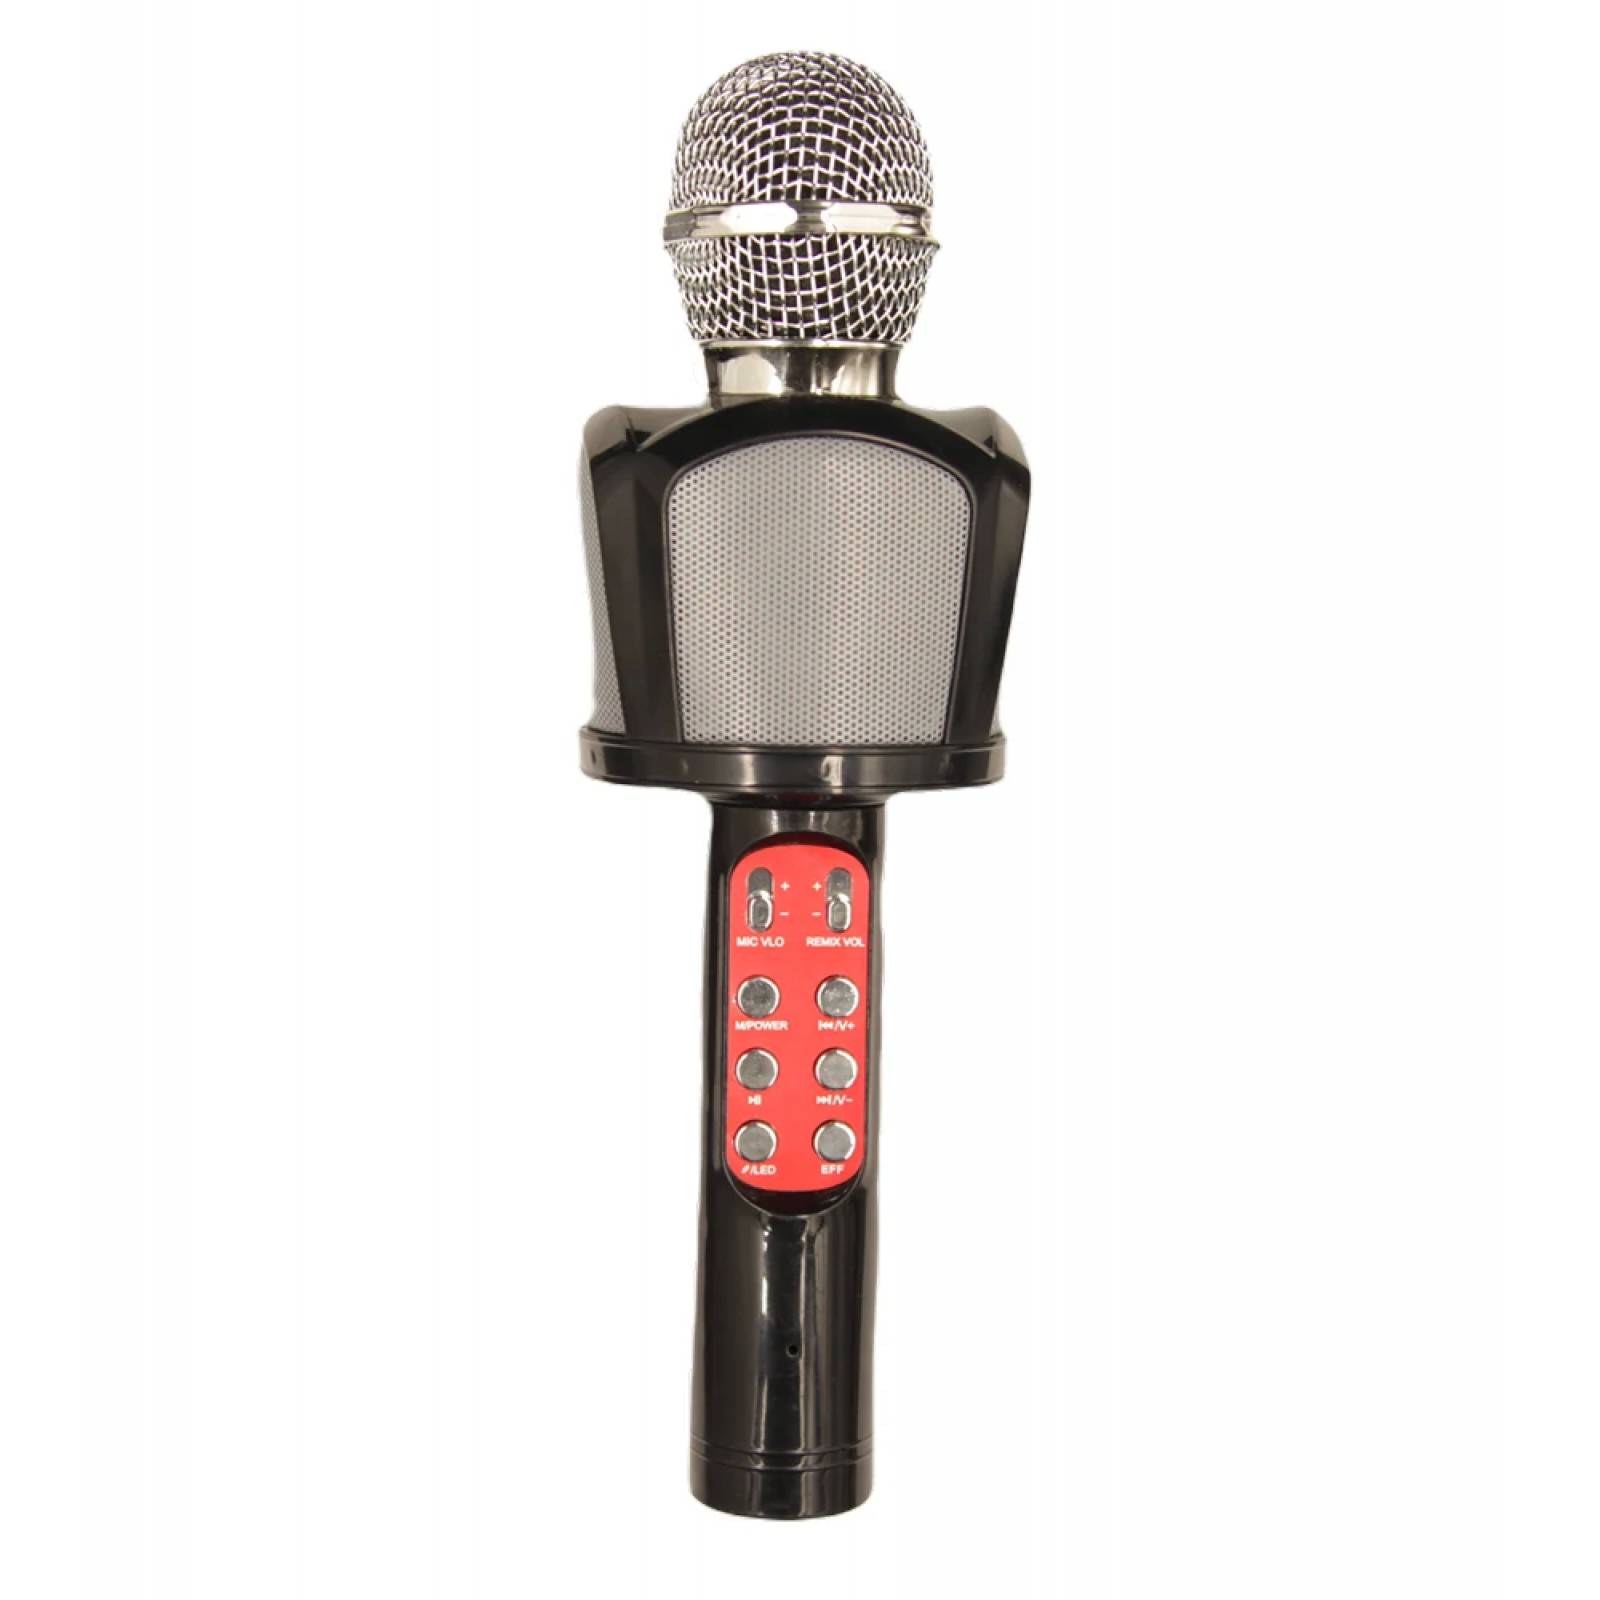 Microfono, Moreka ZX-818, Karaoke, Grabadora, USB, SD Card, Bocina